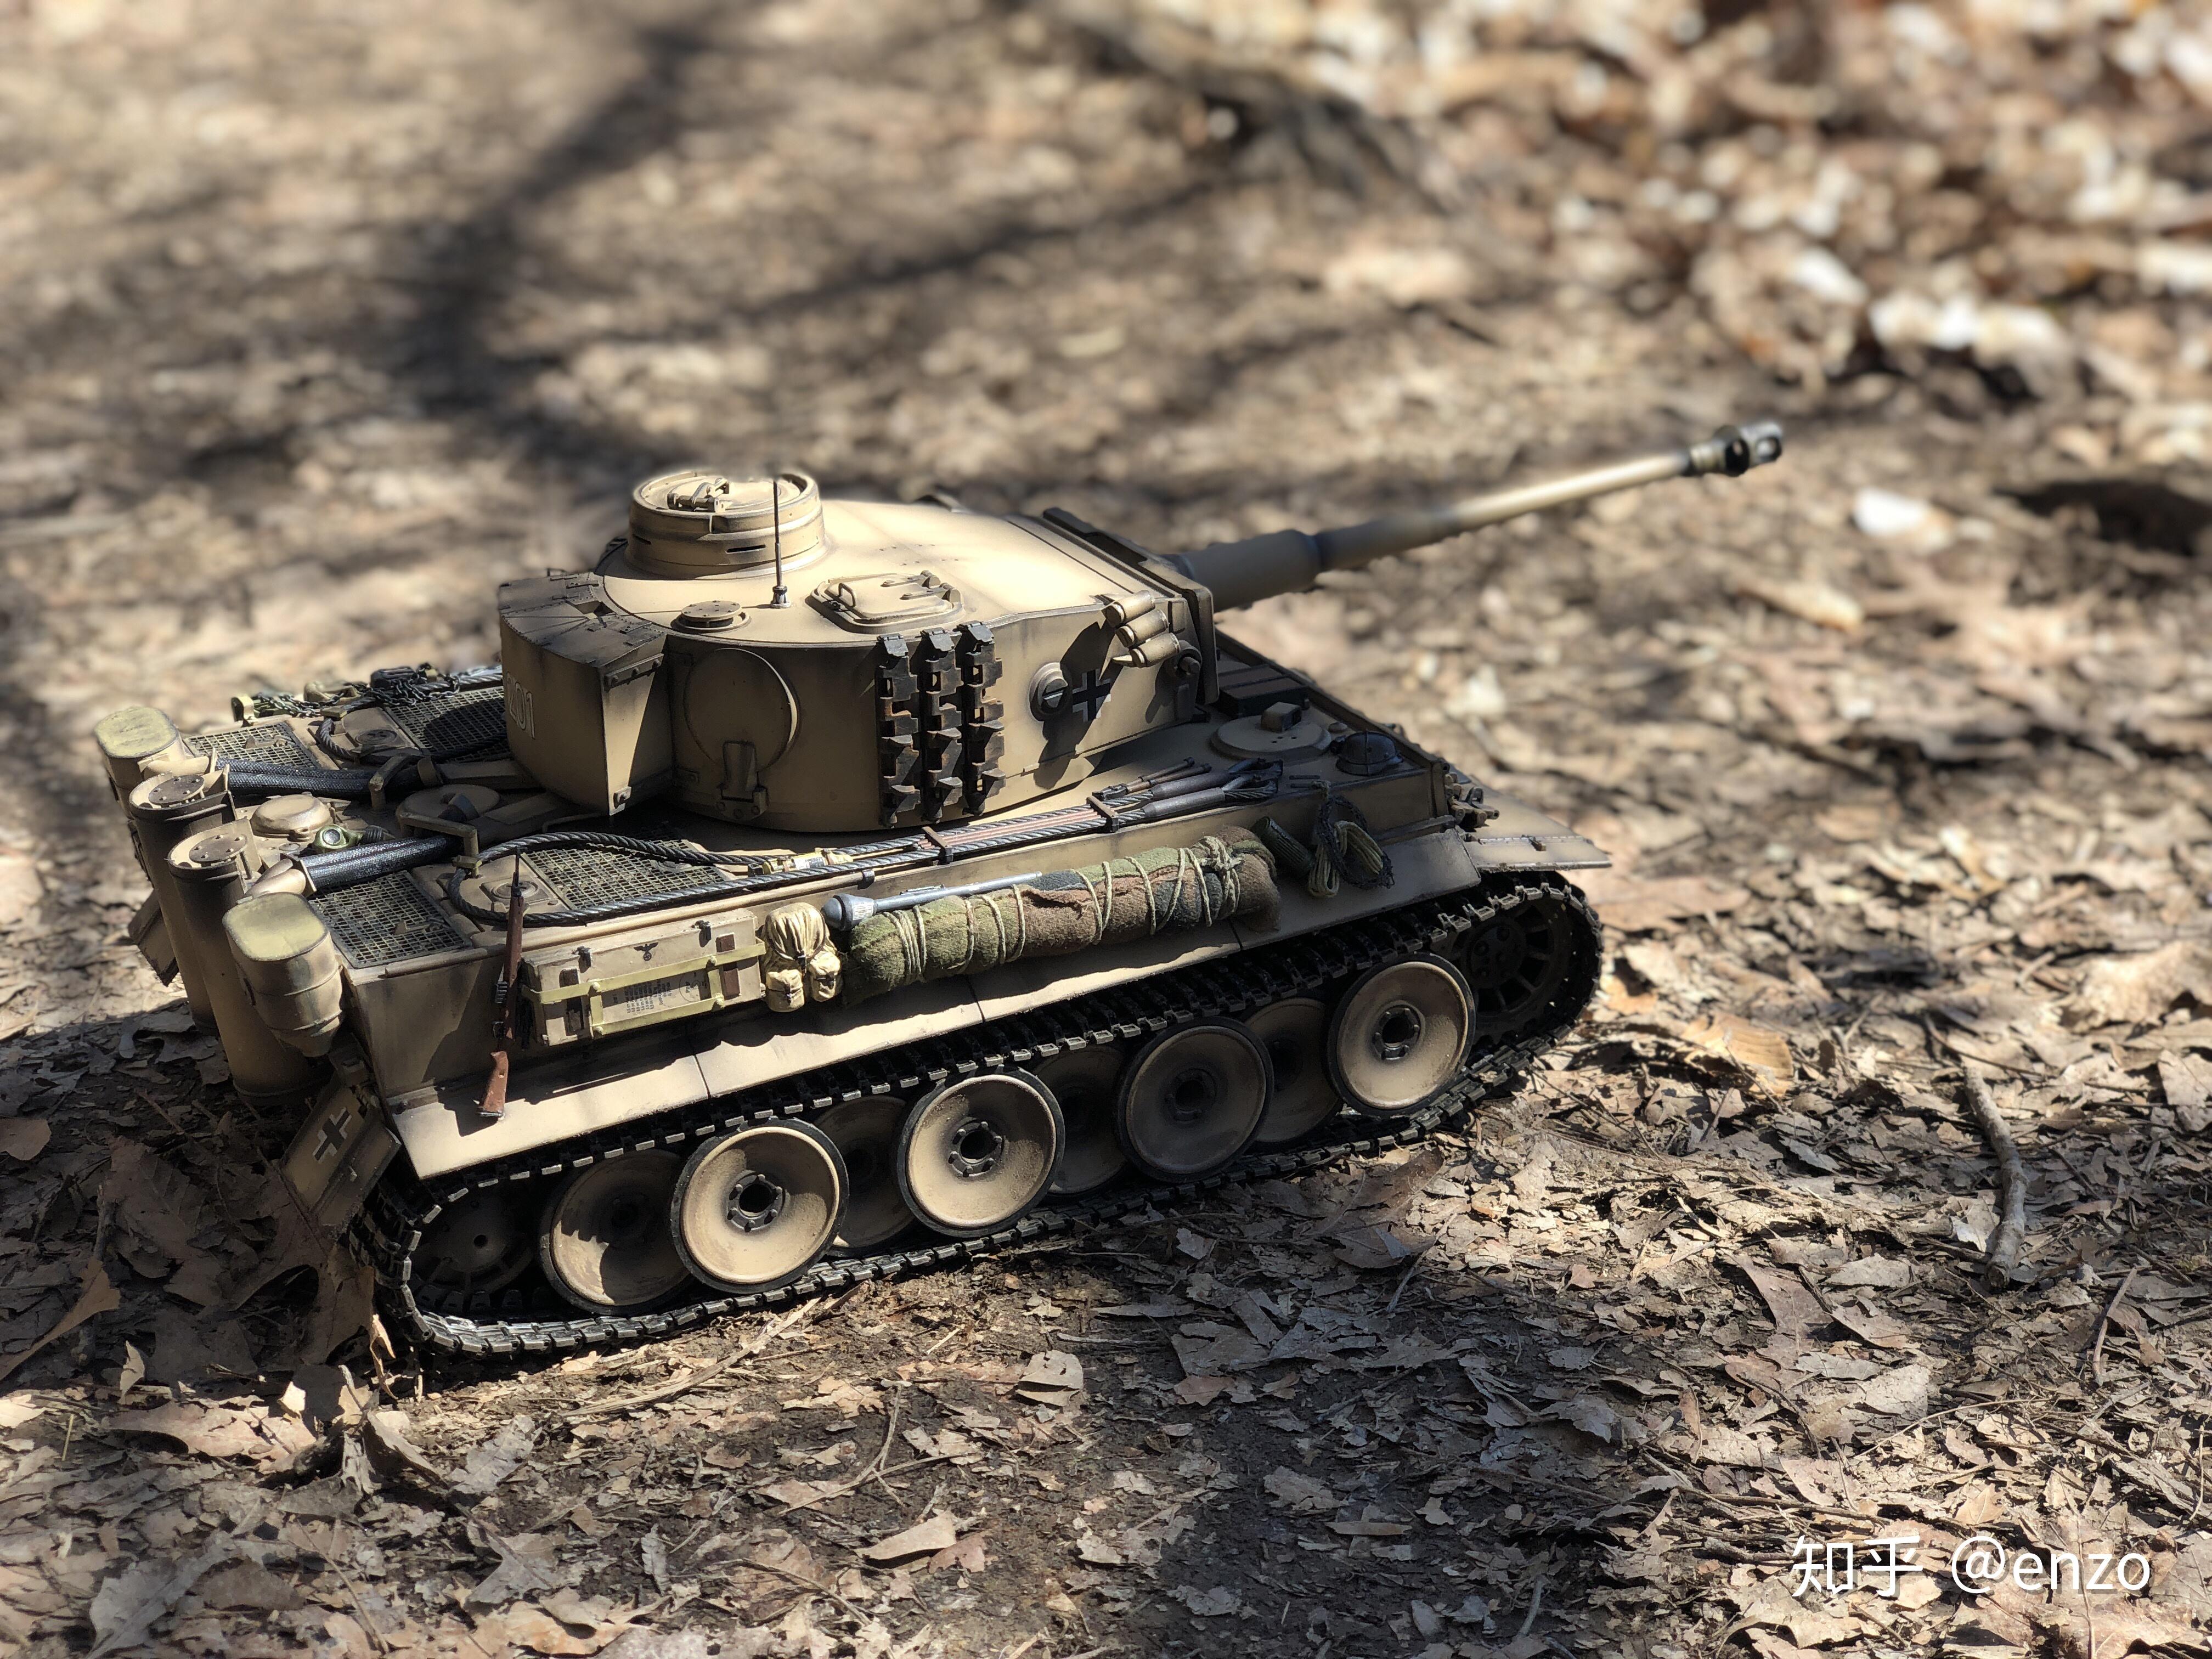 边境模型即将推出1/35天启坦克 - 模型玩具 - Stage1st - stage1/s1 游戏动漫论坛